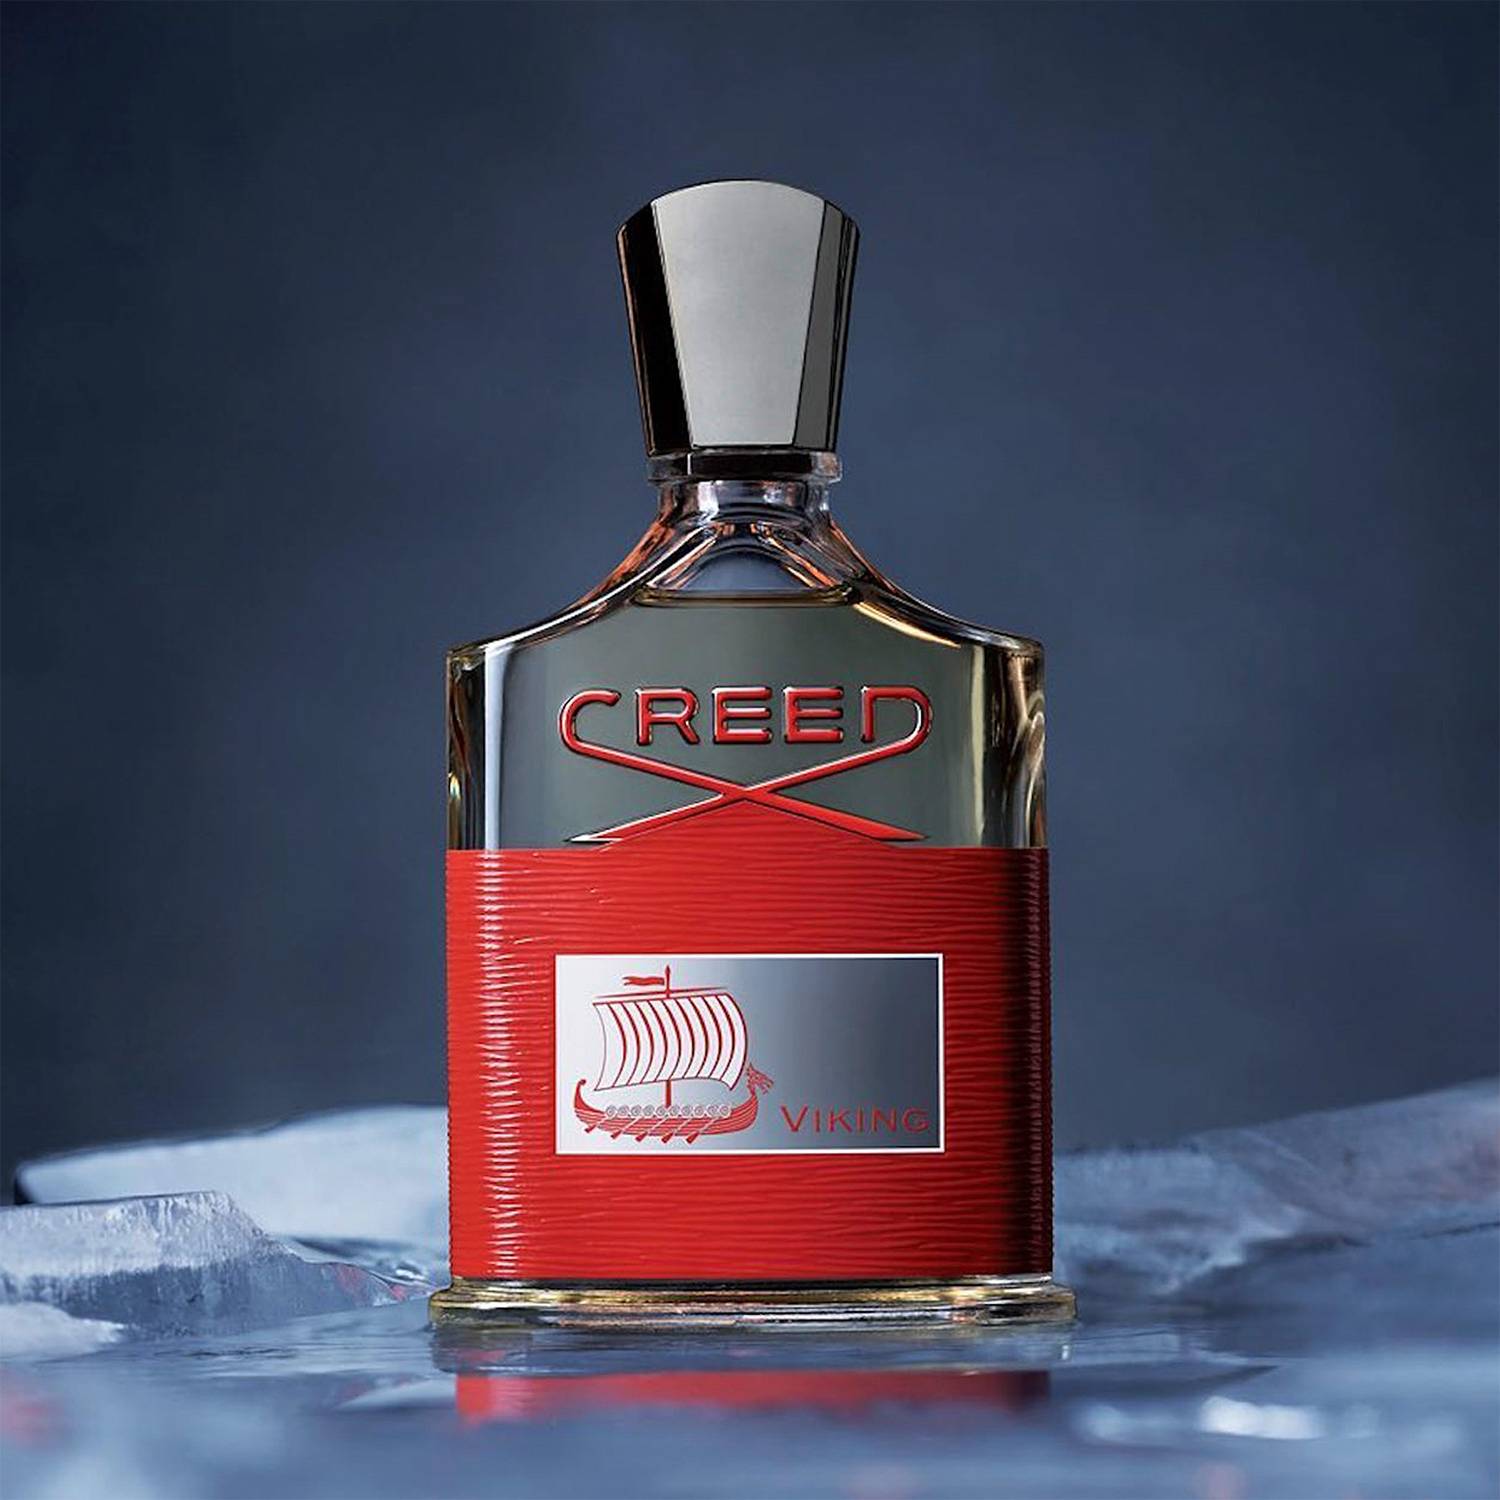 Perfume Creed Viking Red Para Hombre